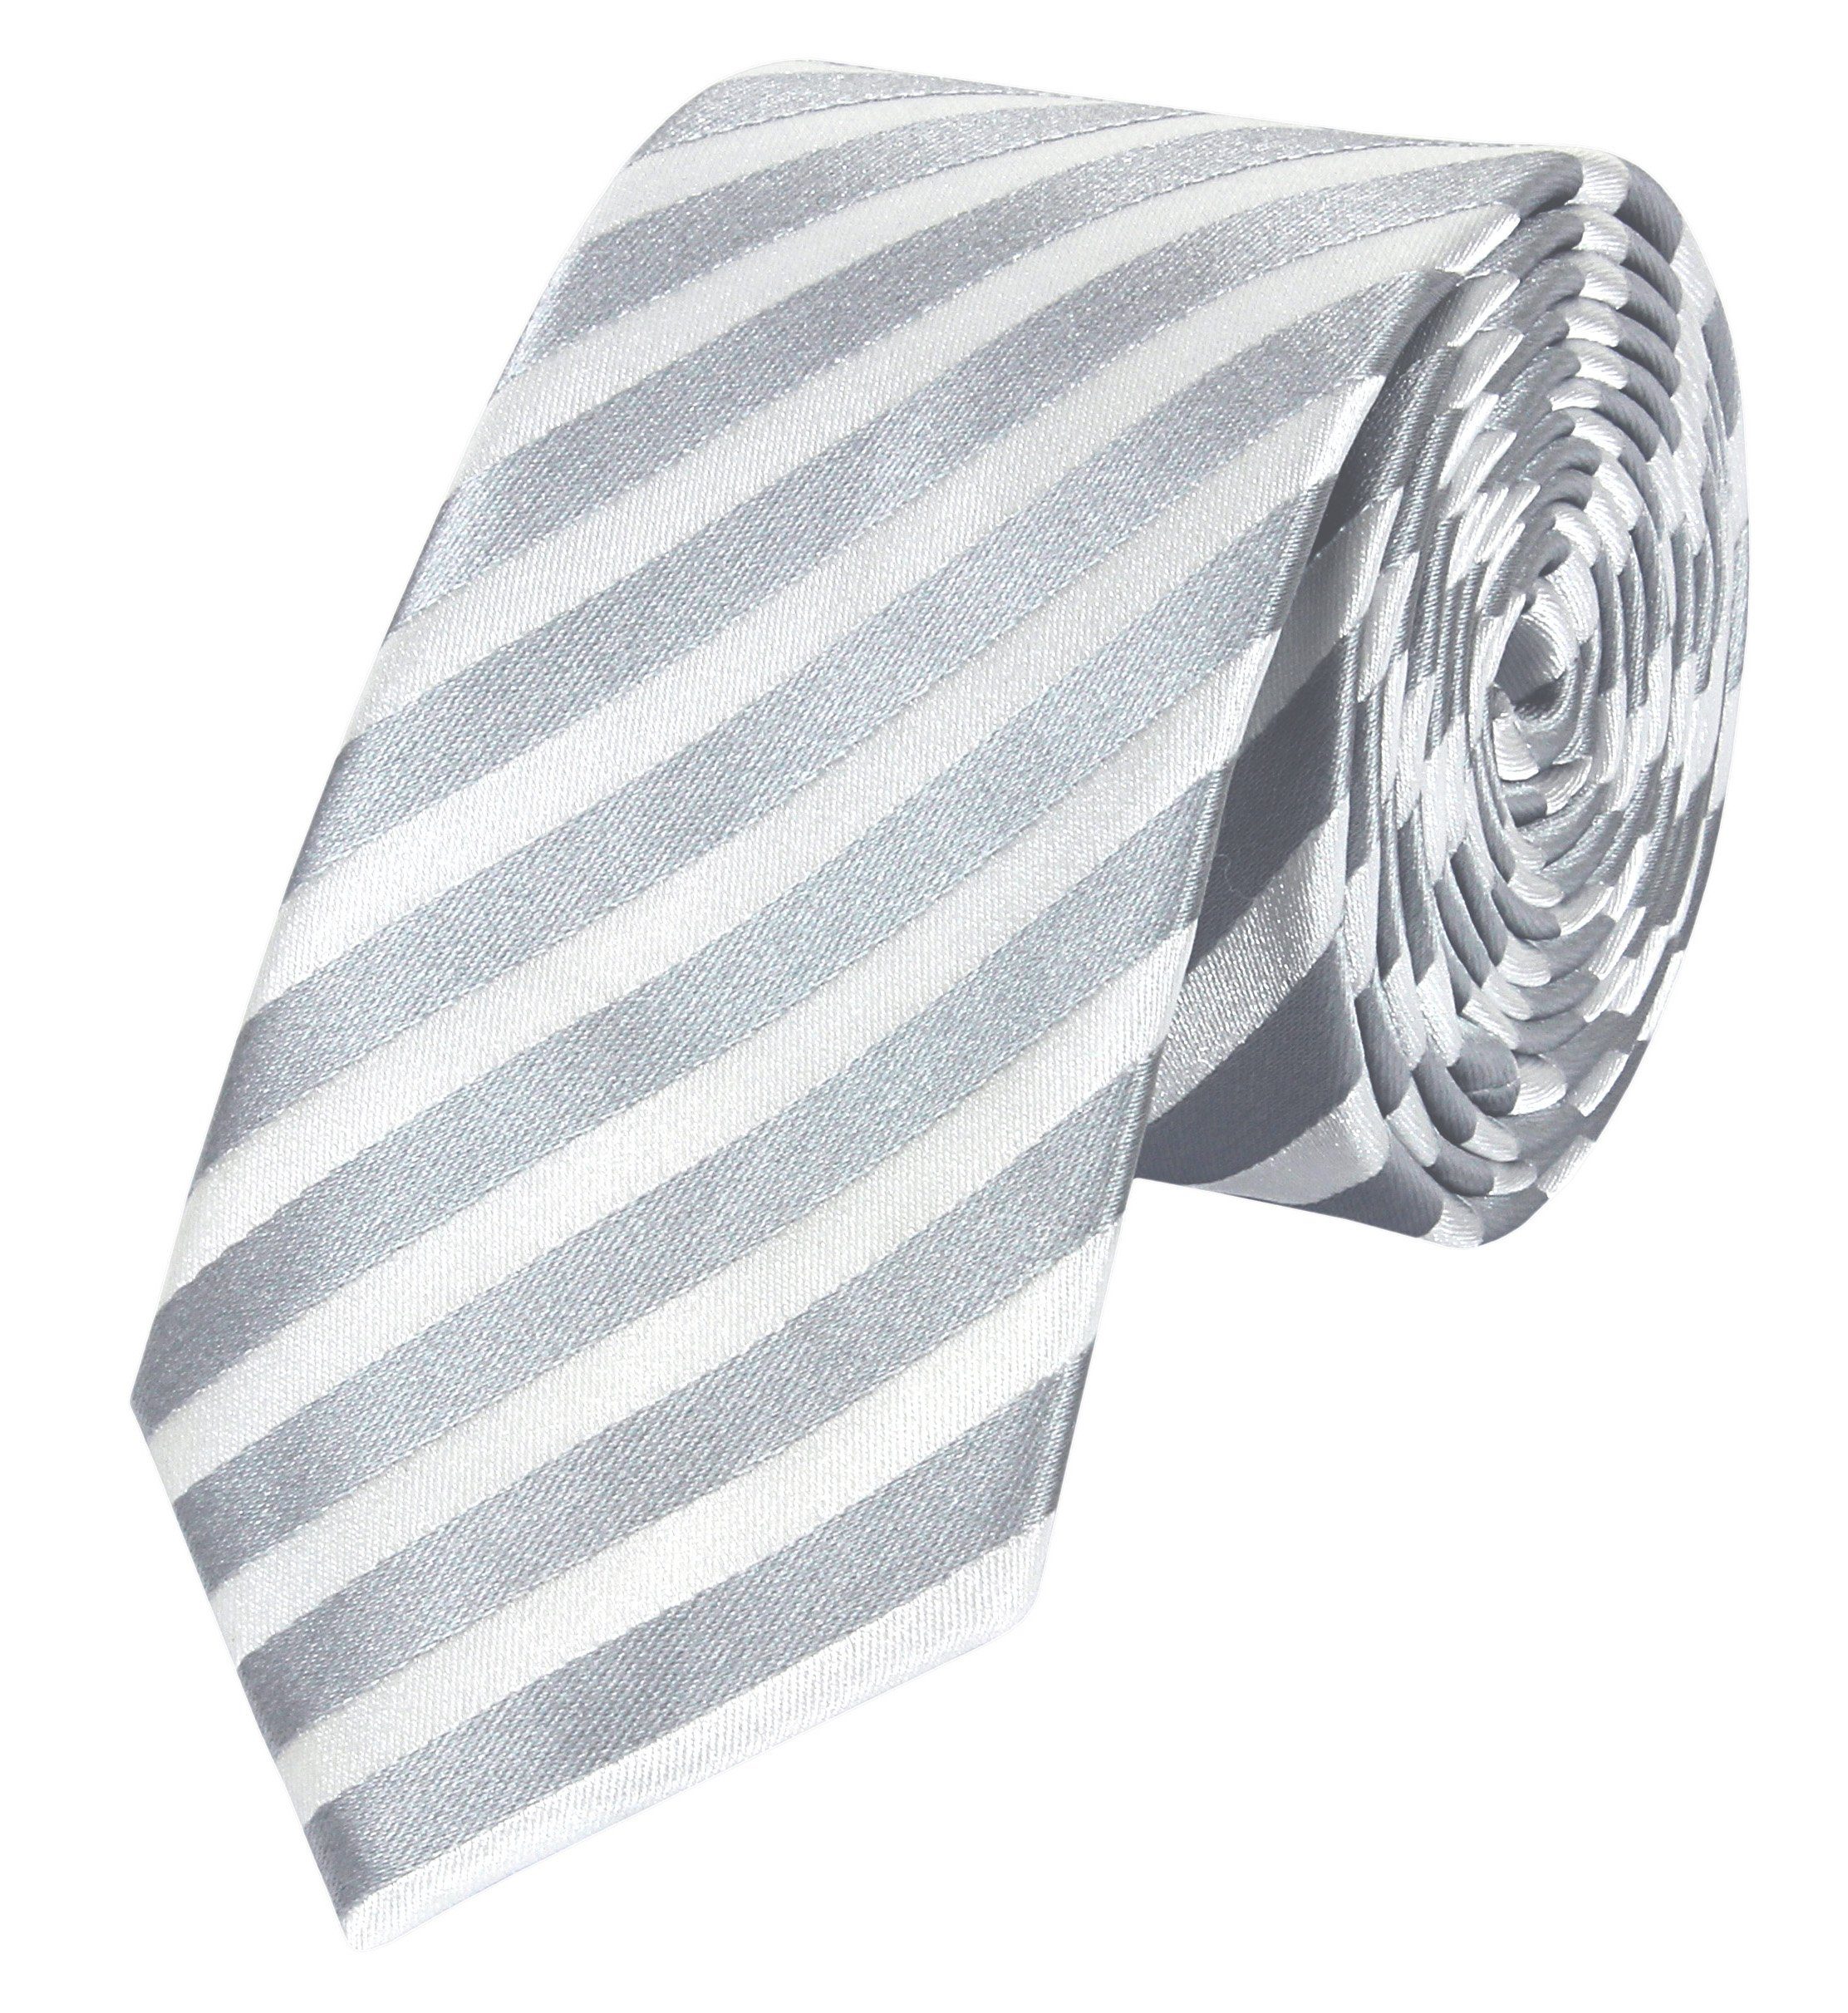 Fabio Farini Krawatte Herren Grau/Weiß Silber (6cm), - - 6cm Grau Gestreift) Schmal (ohne Männer Weiß klassische Breite Krawatten in Schlipse Box